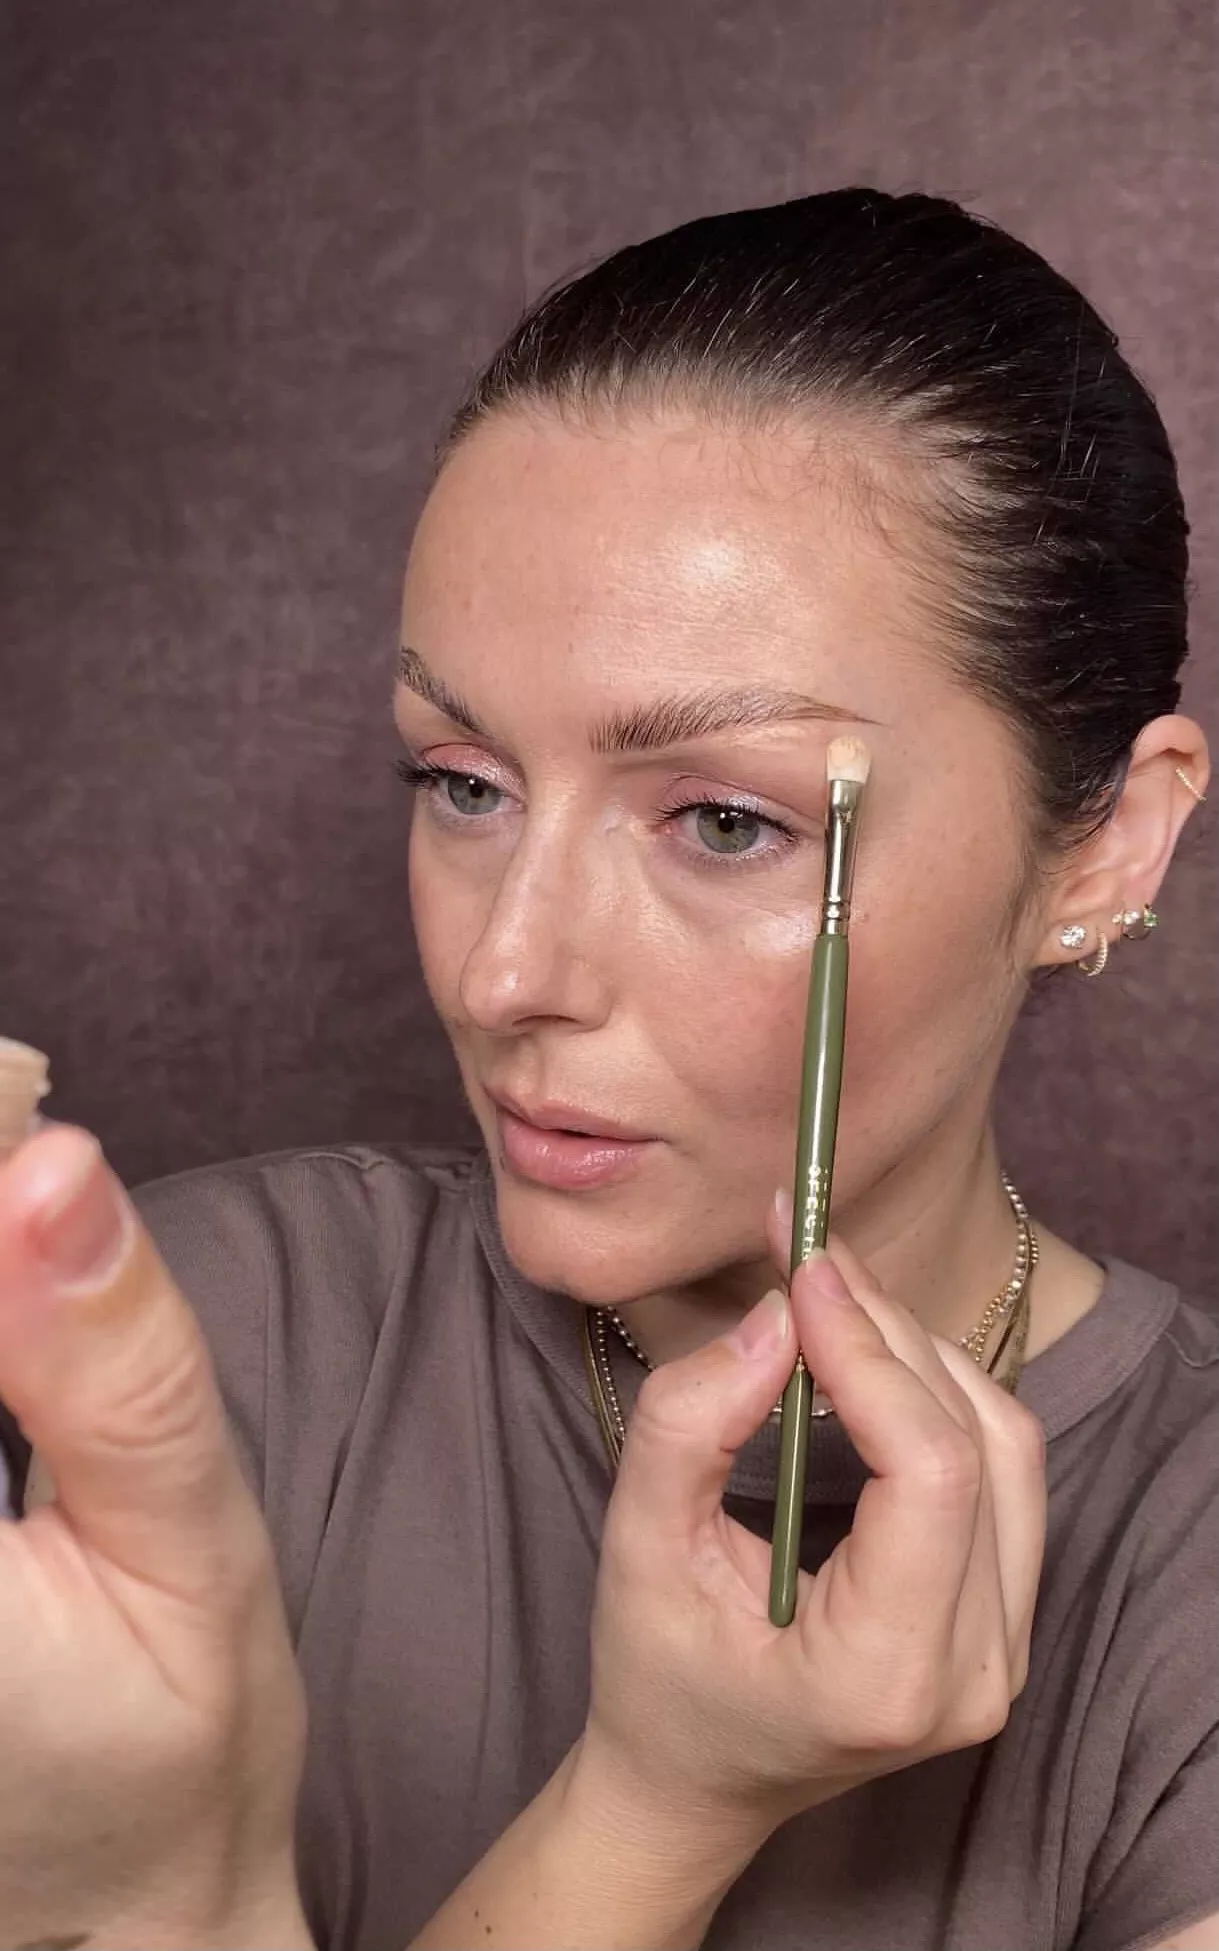 eyebrow tutorial